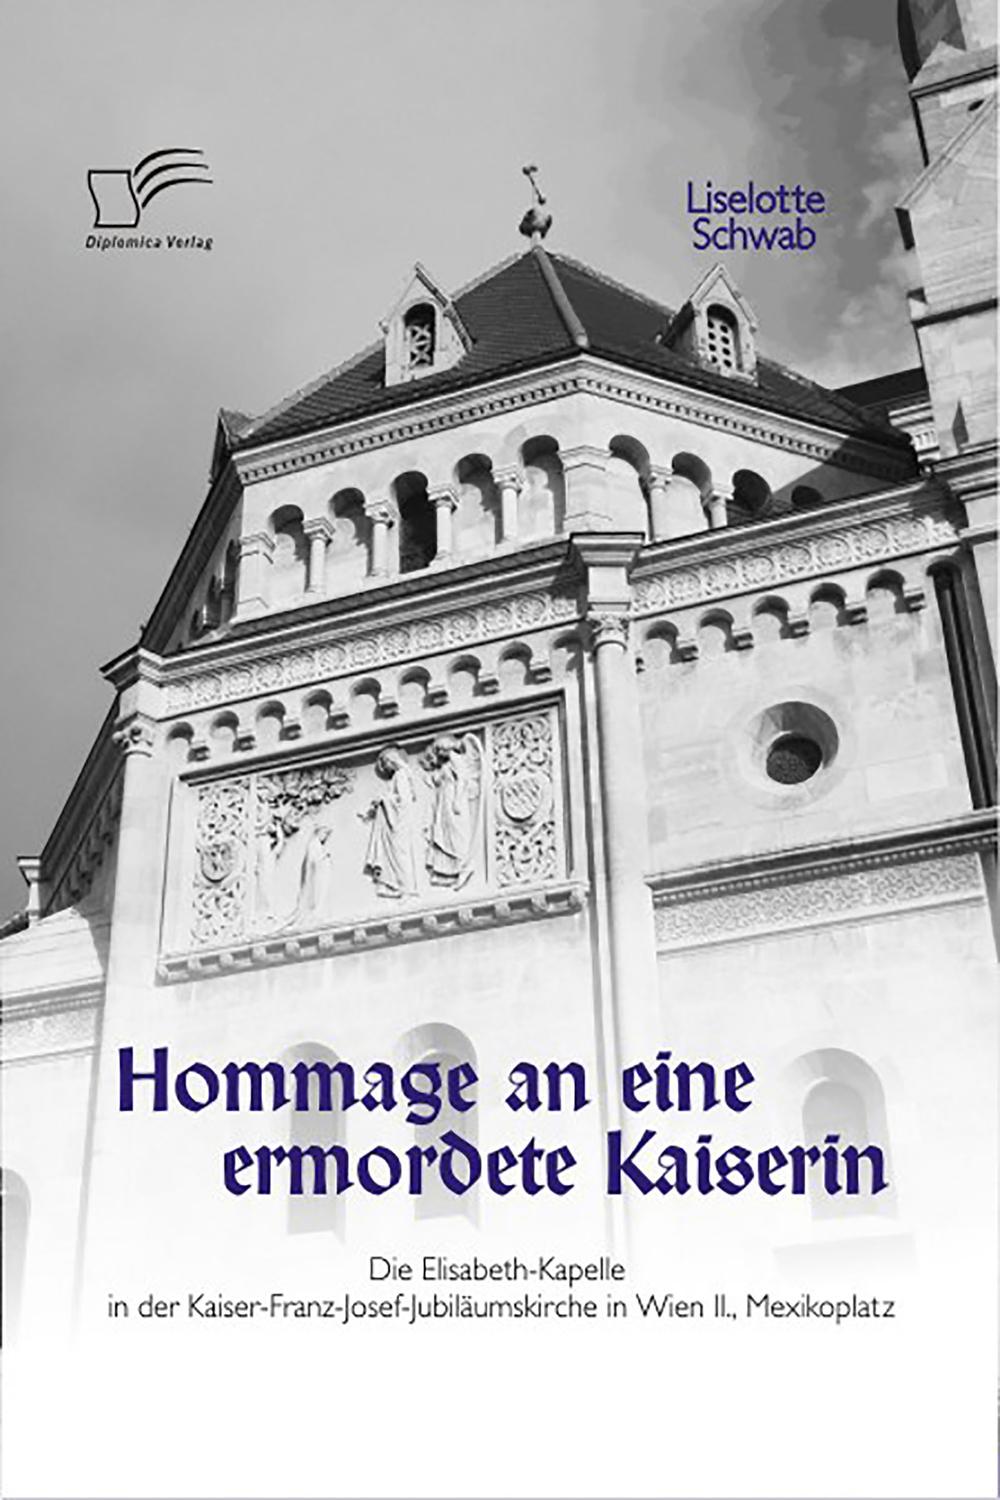 Hommage an eine ermordete Kaiserin: Die Elisabeth-Kapelle in der Kaiser-Franz-Josef-Jubiläumskirche in Wien II., Mexikoplatz - Liselotte Schwab